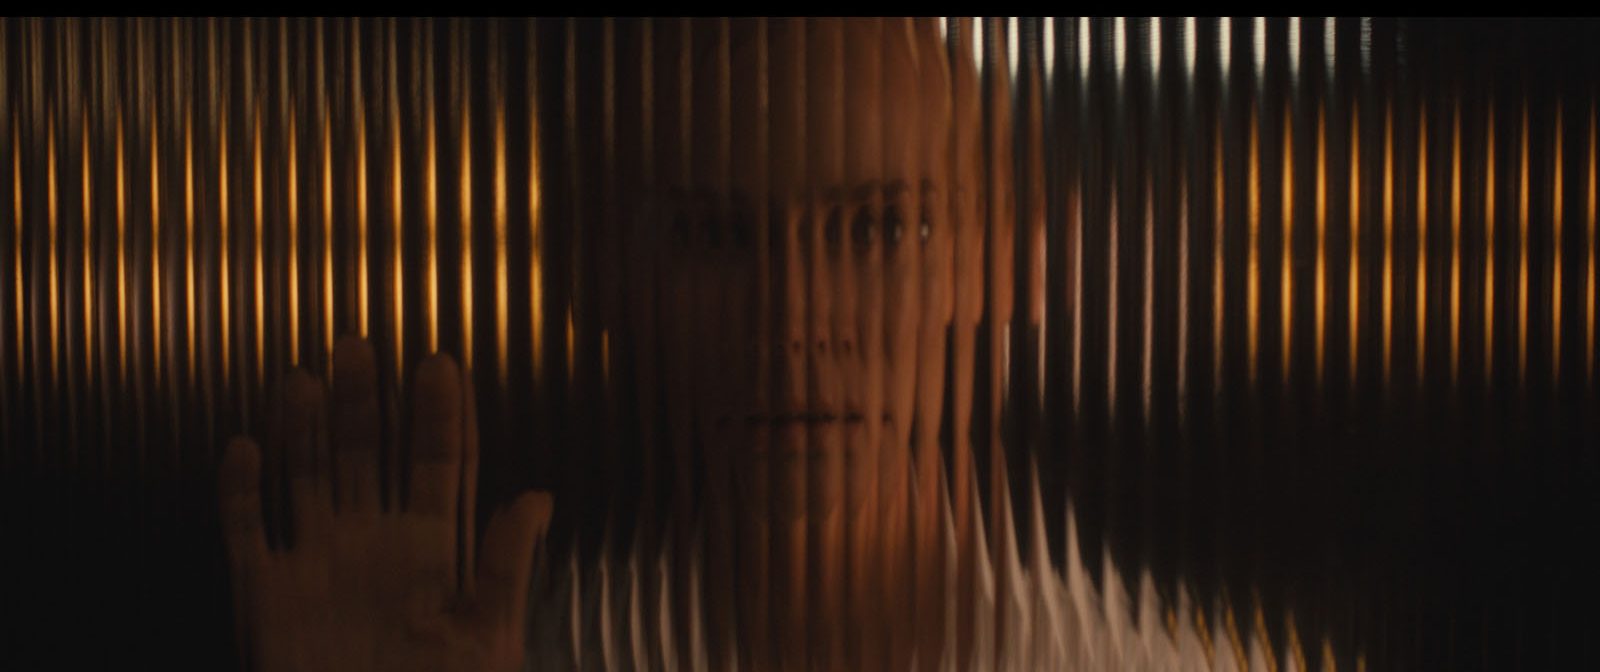 un buste de femme vu à travers un écran déformant, découpant l'image en stries verticales